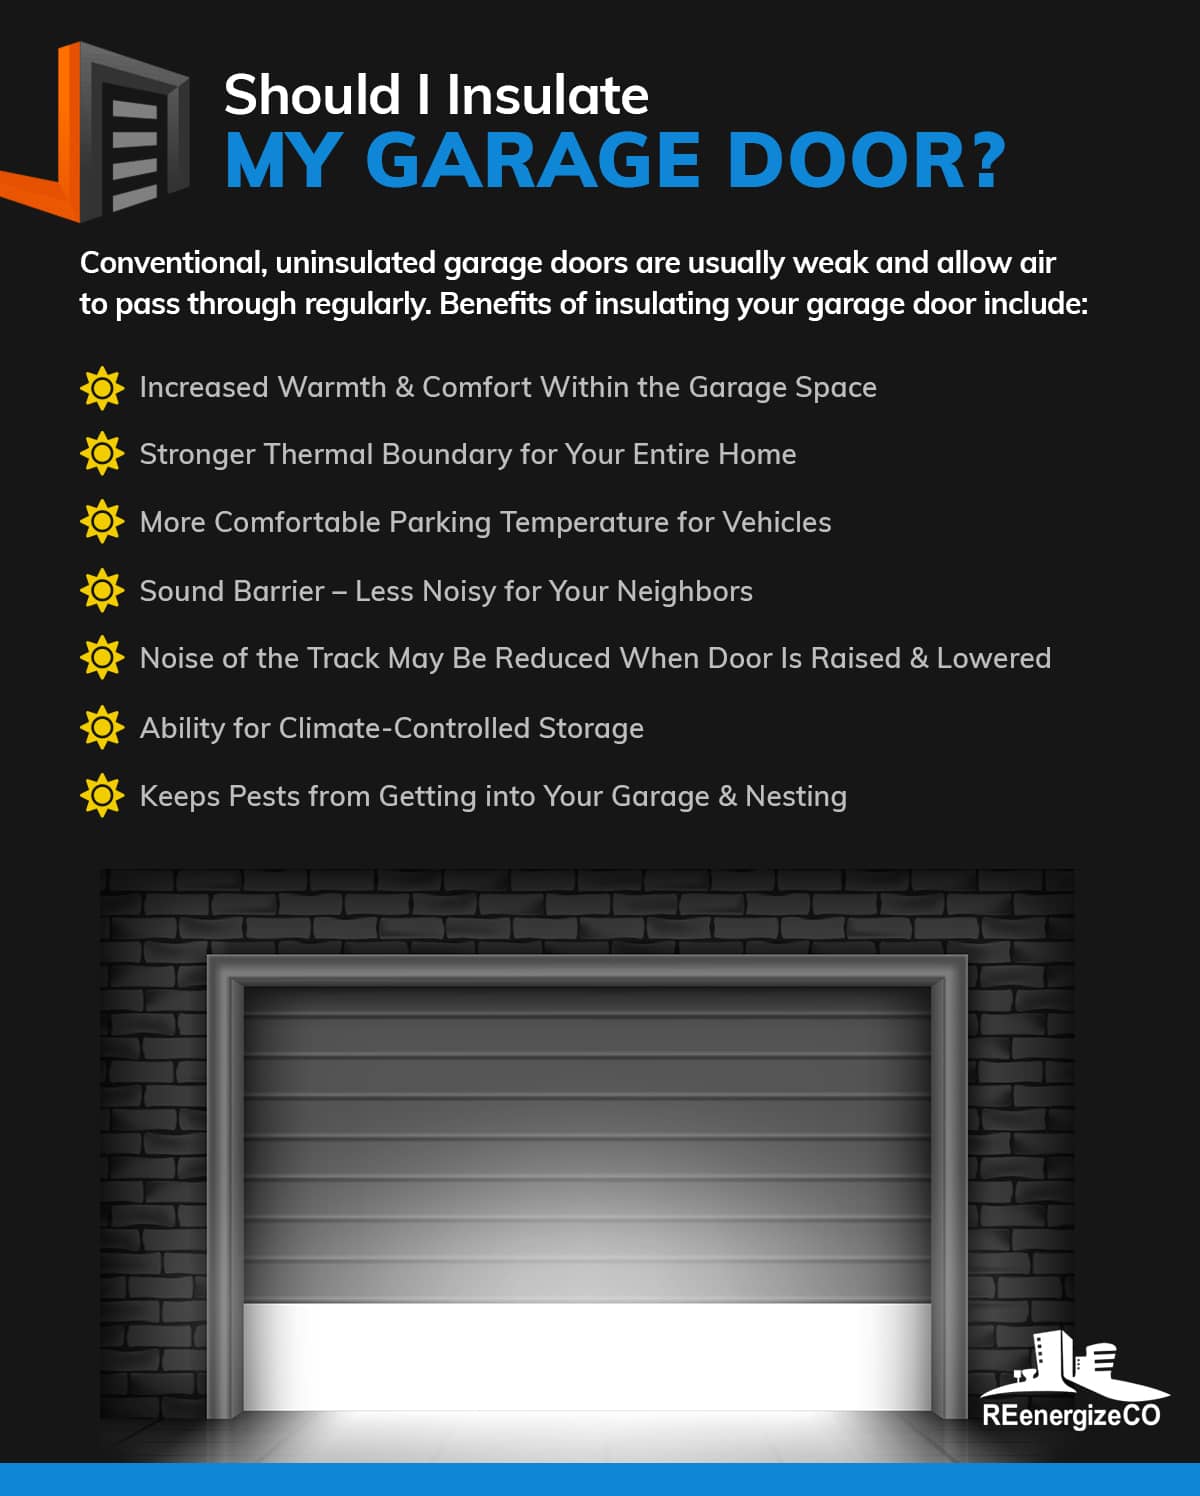 should I insulate my garage door?